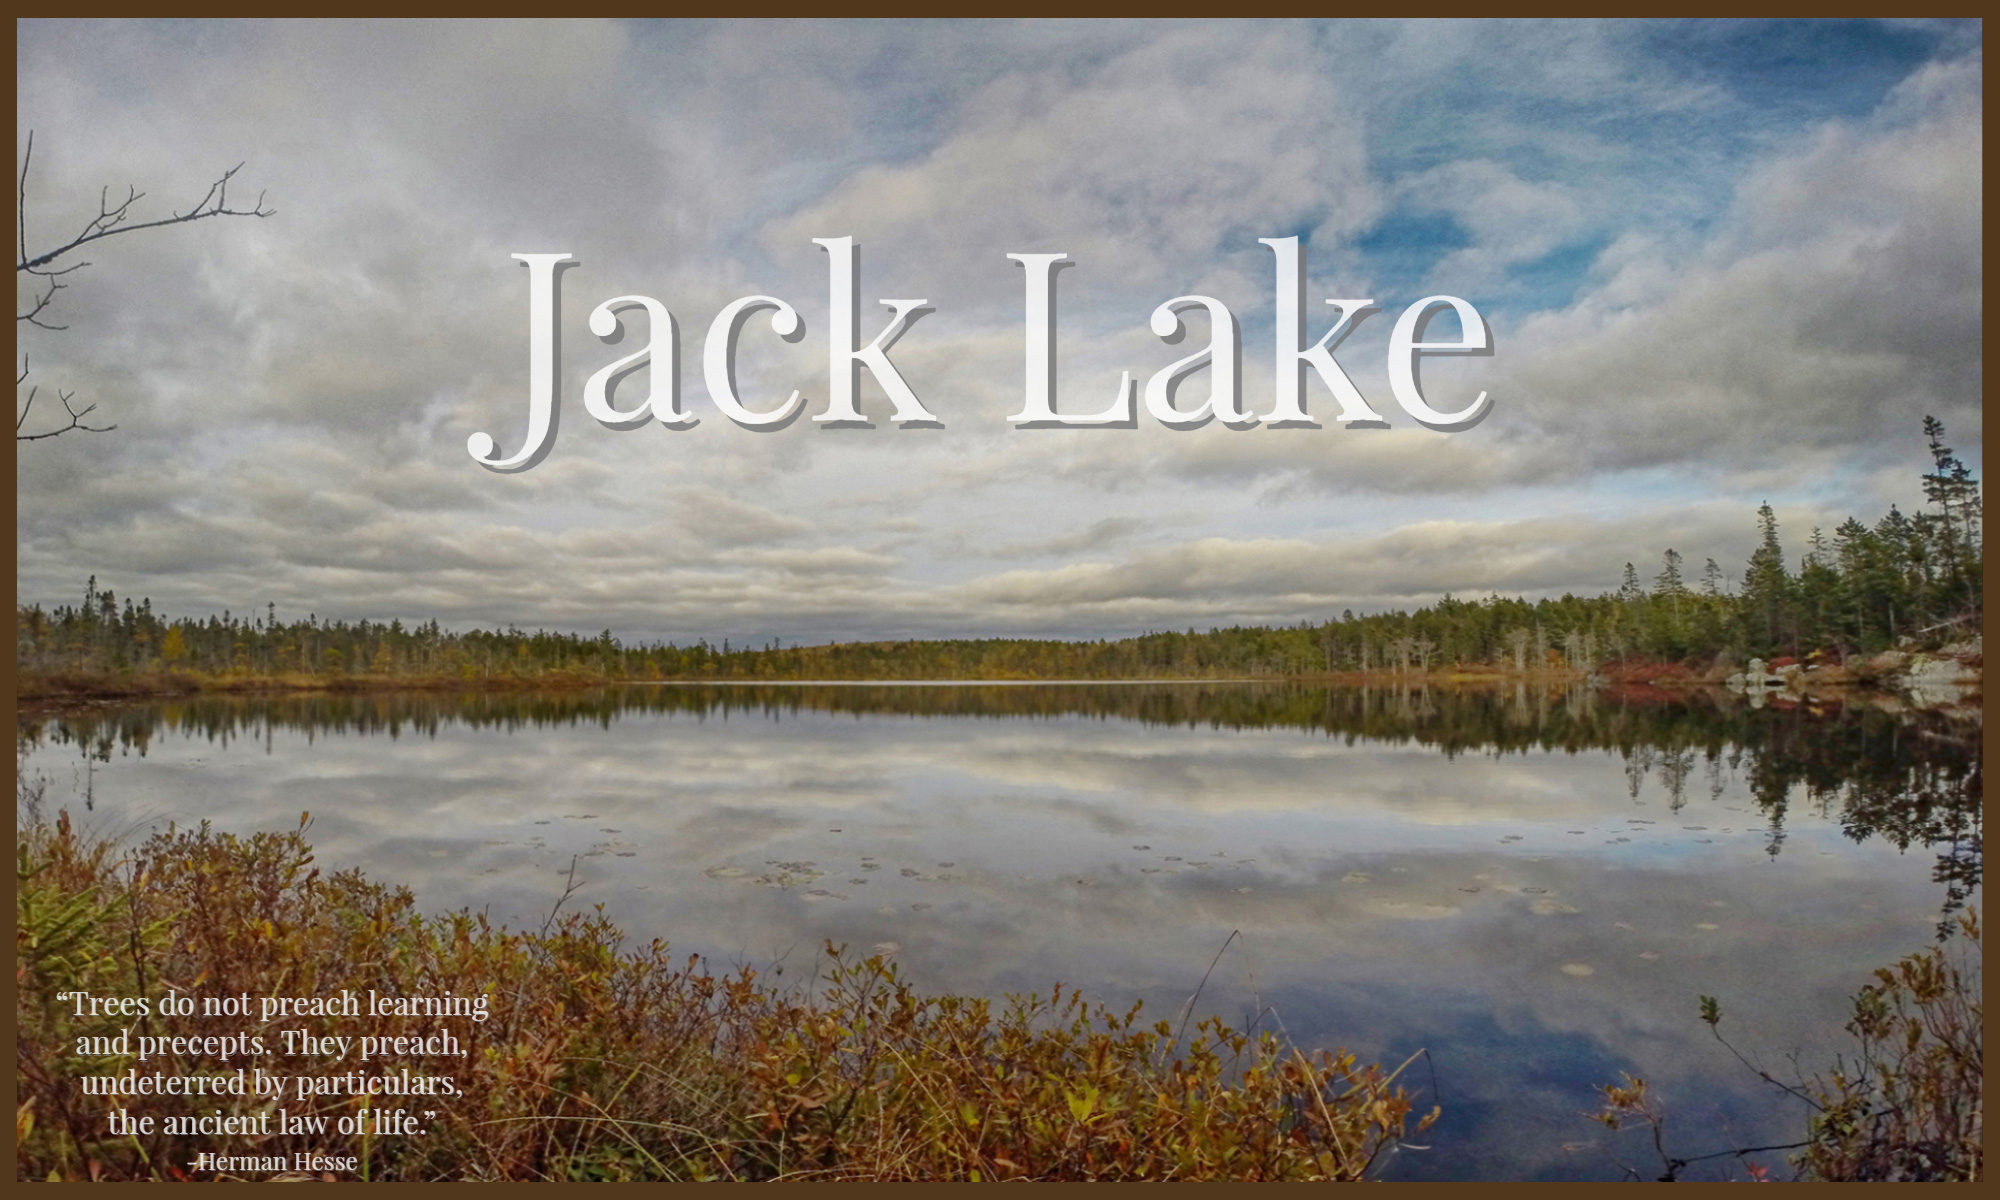 Jack Lake Hiking Trail Bedford - Halifax, Nova Scotia